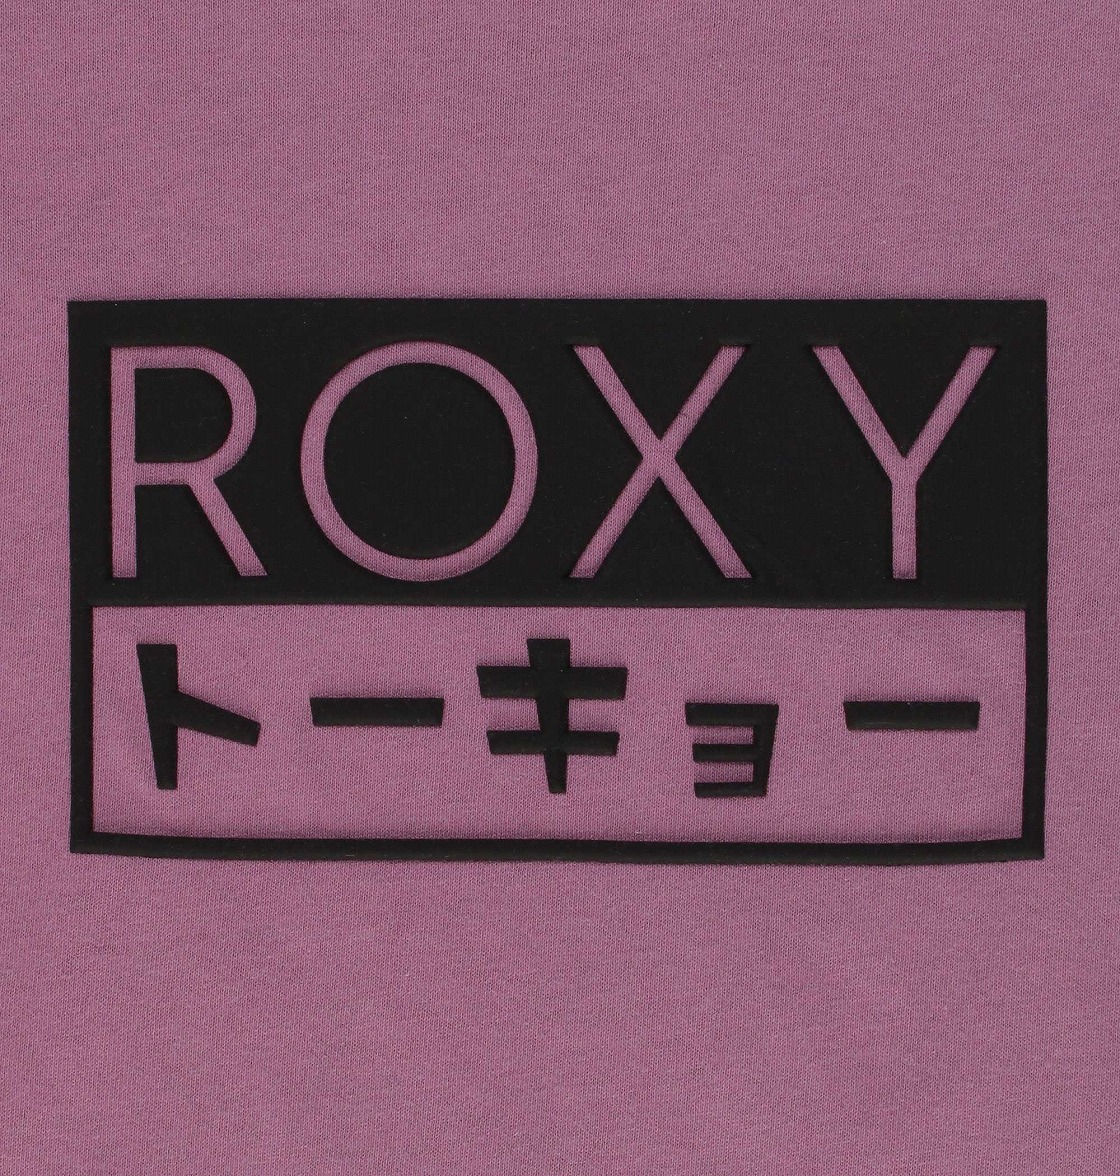 楽天市場 アウトレット価格 Roxy ロキシー Tシャツ Roxy Box Tee Tシャツ ティーシャツ Quiksilver Online Store